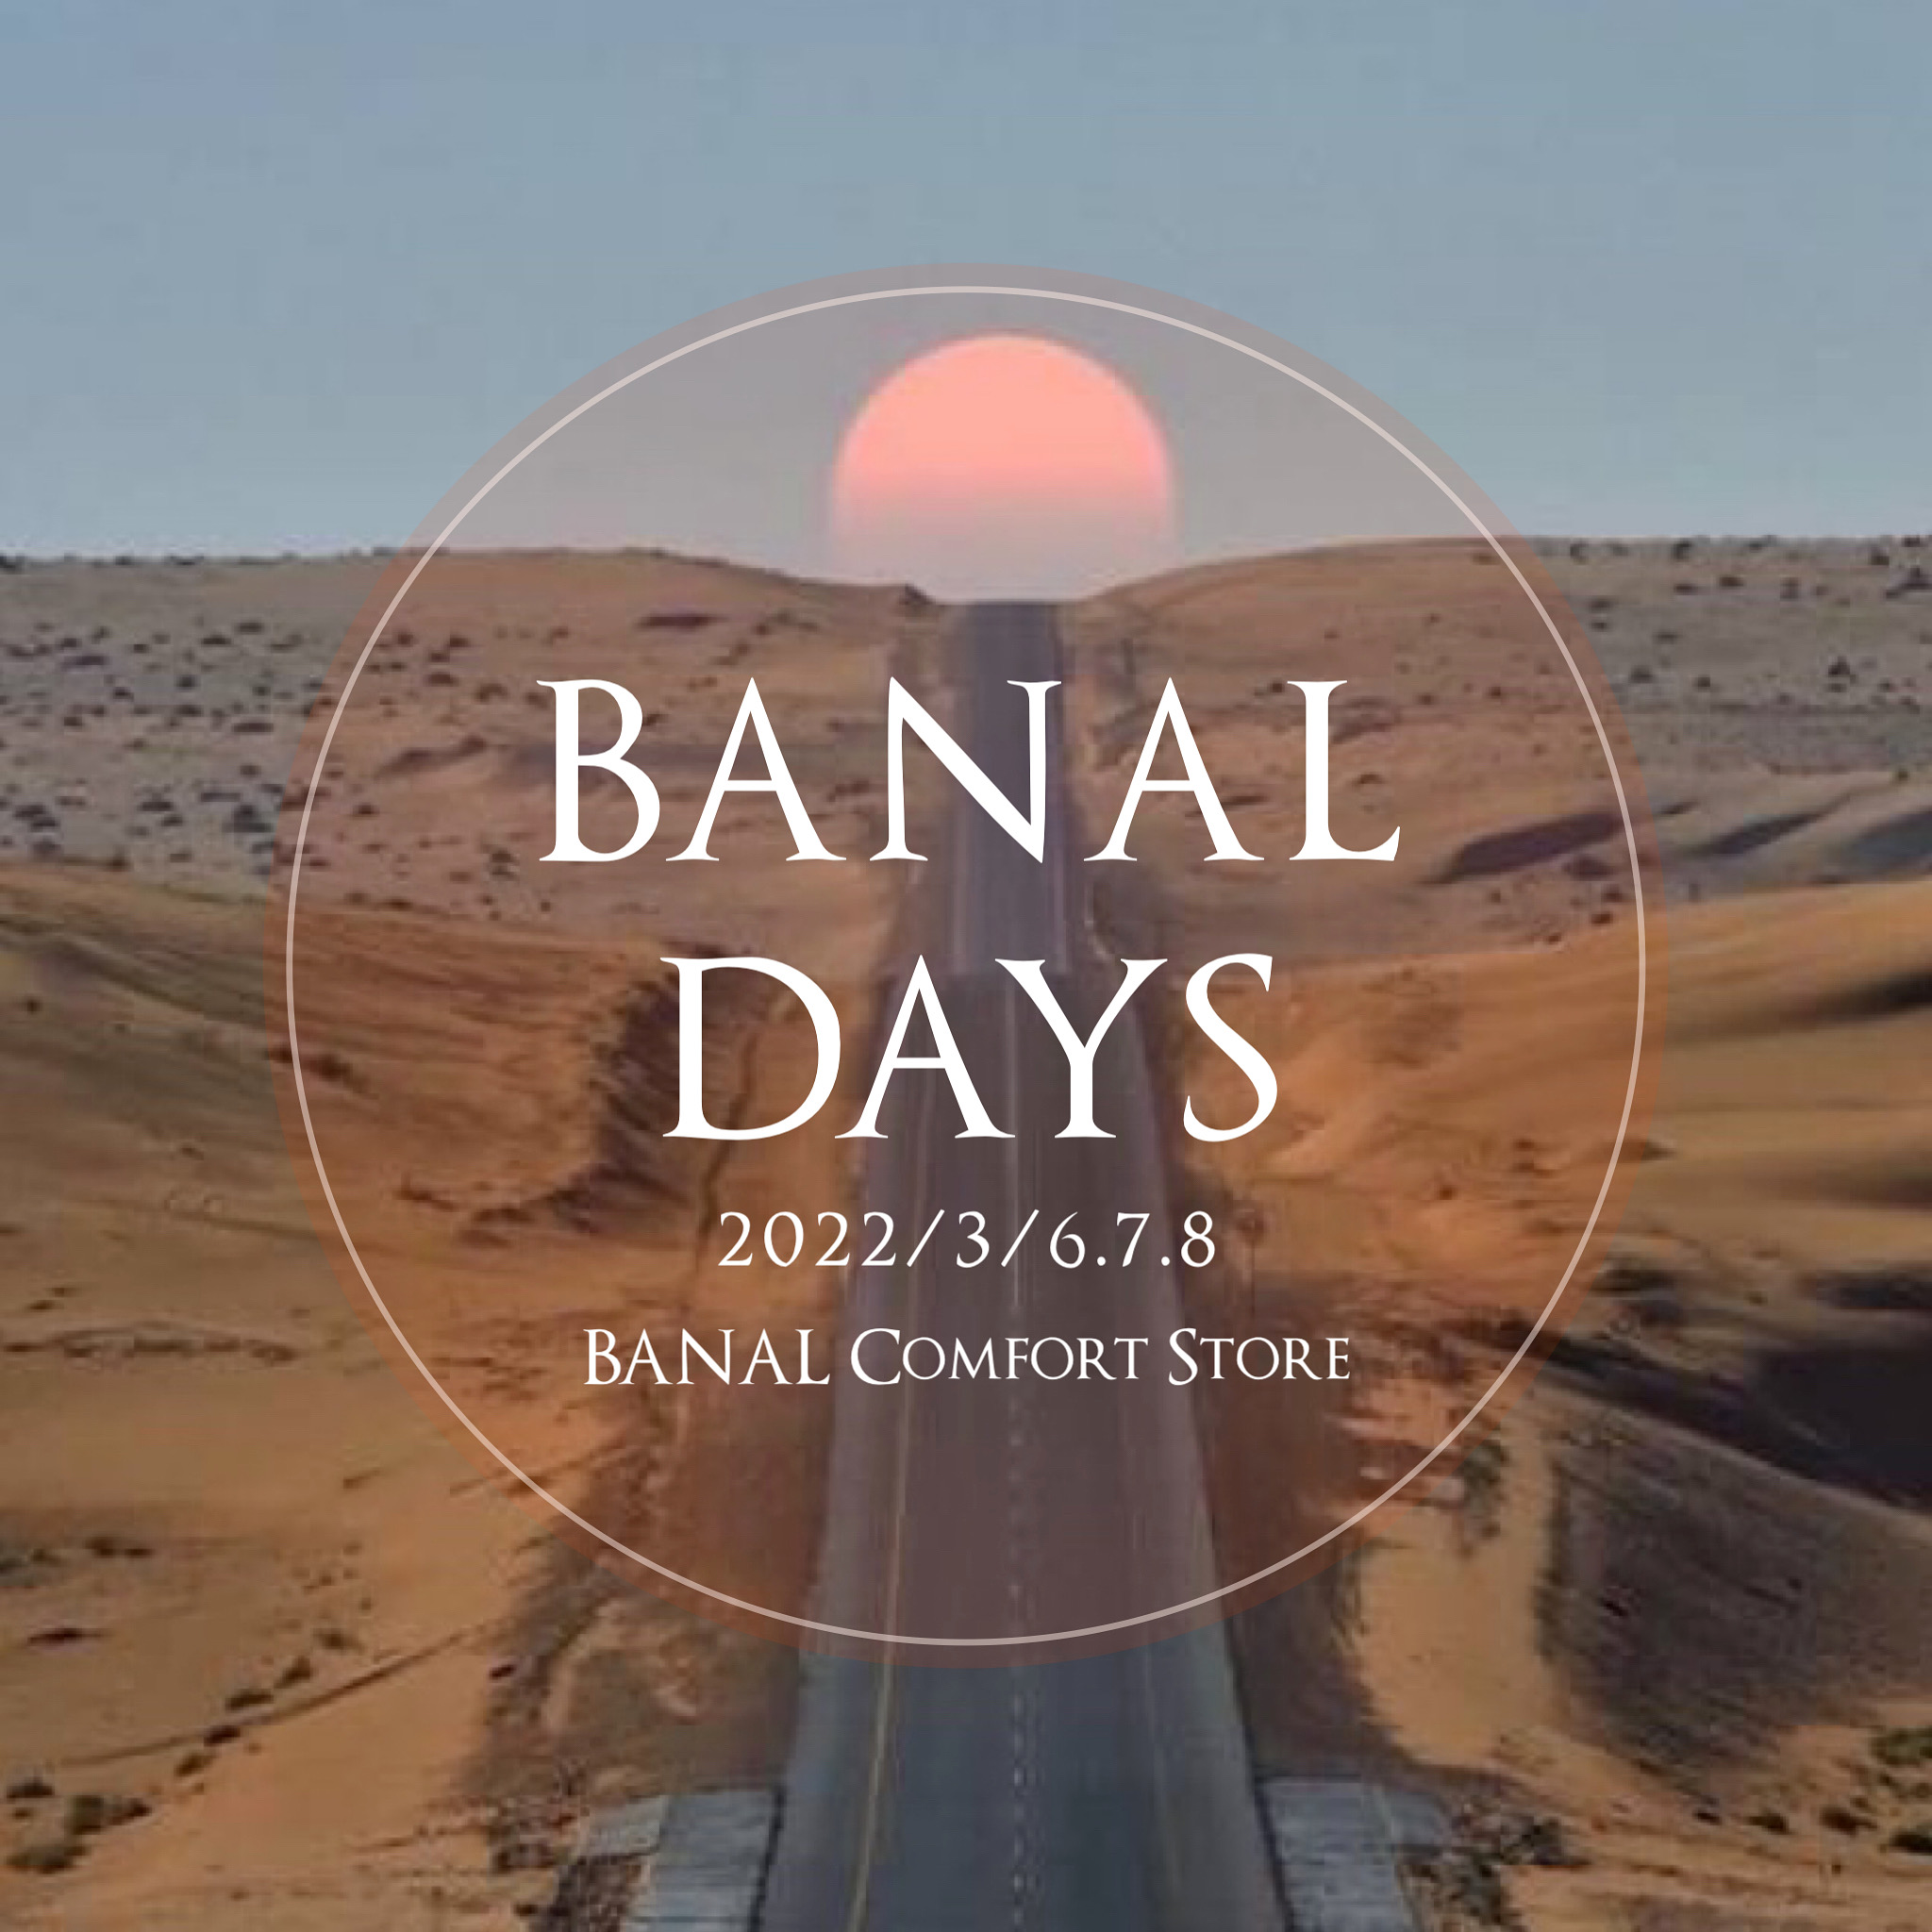 BANAL DAYS